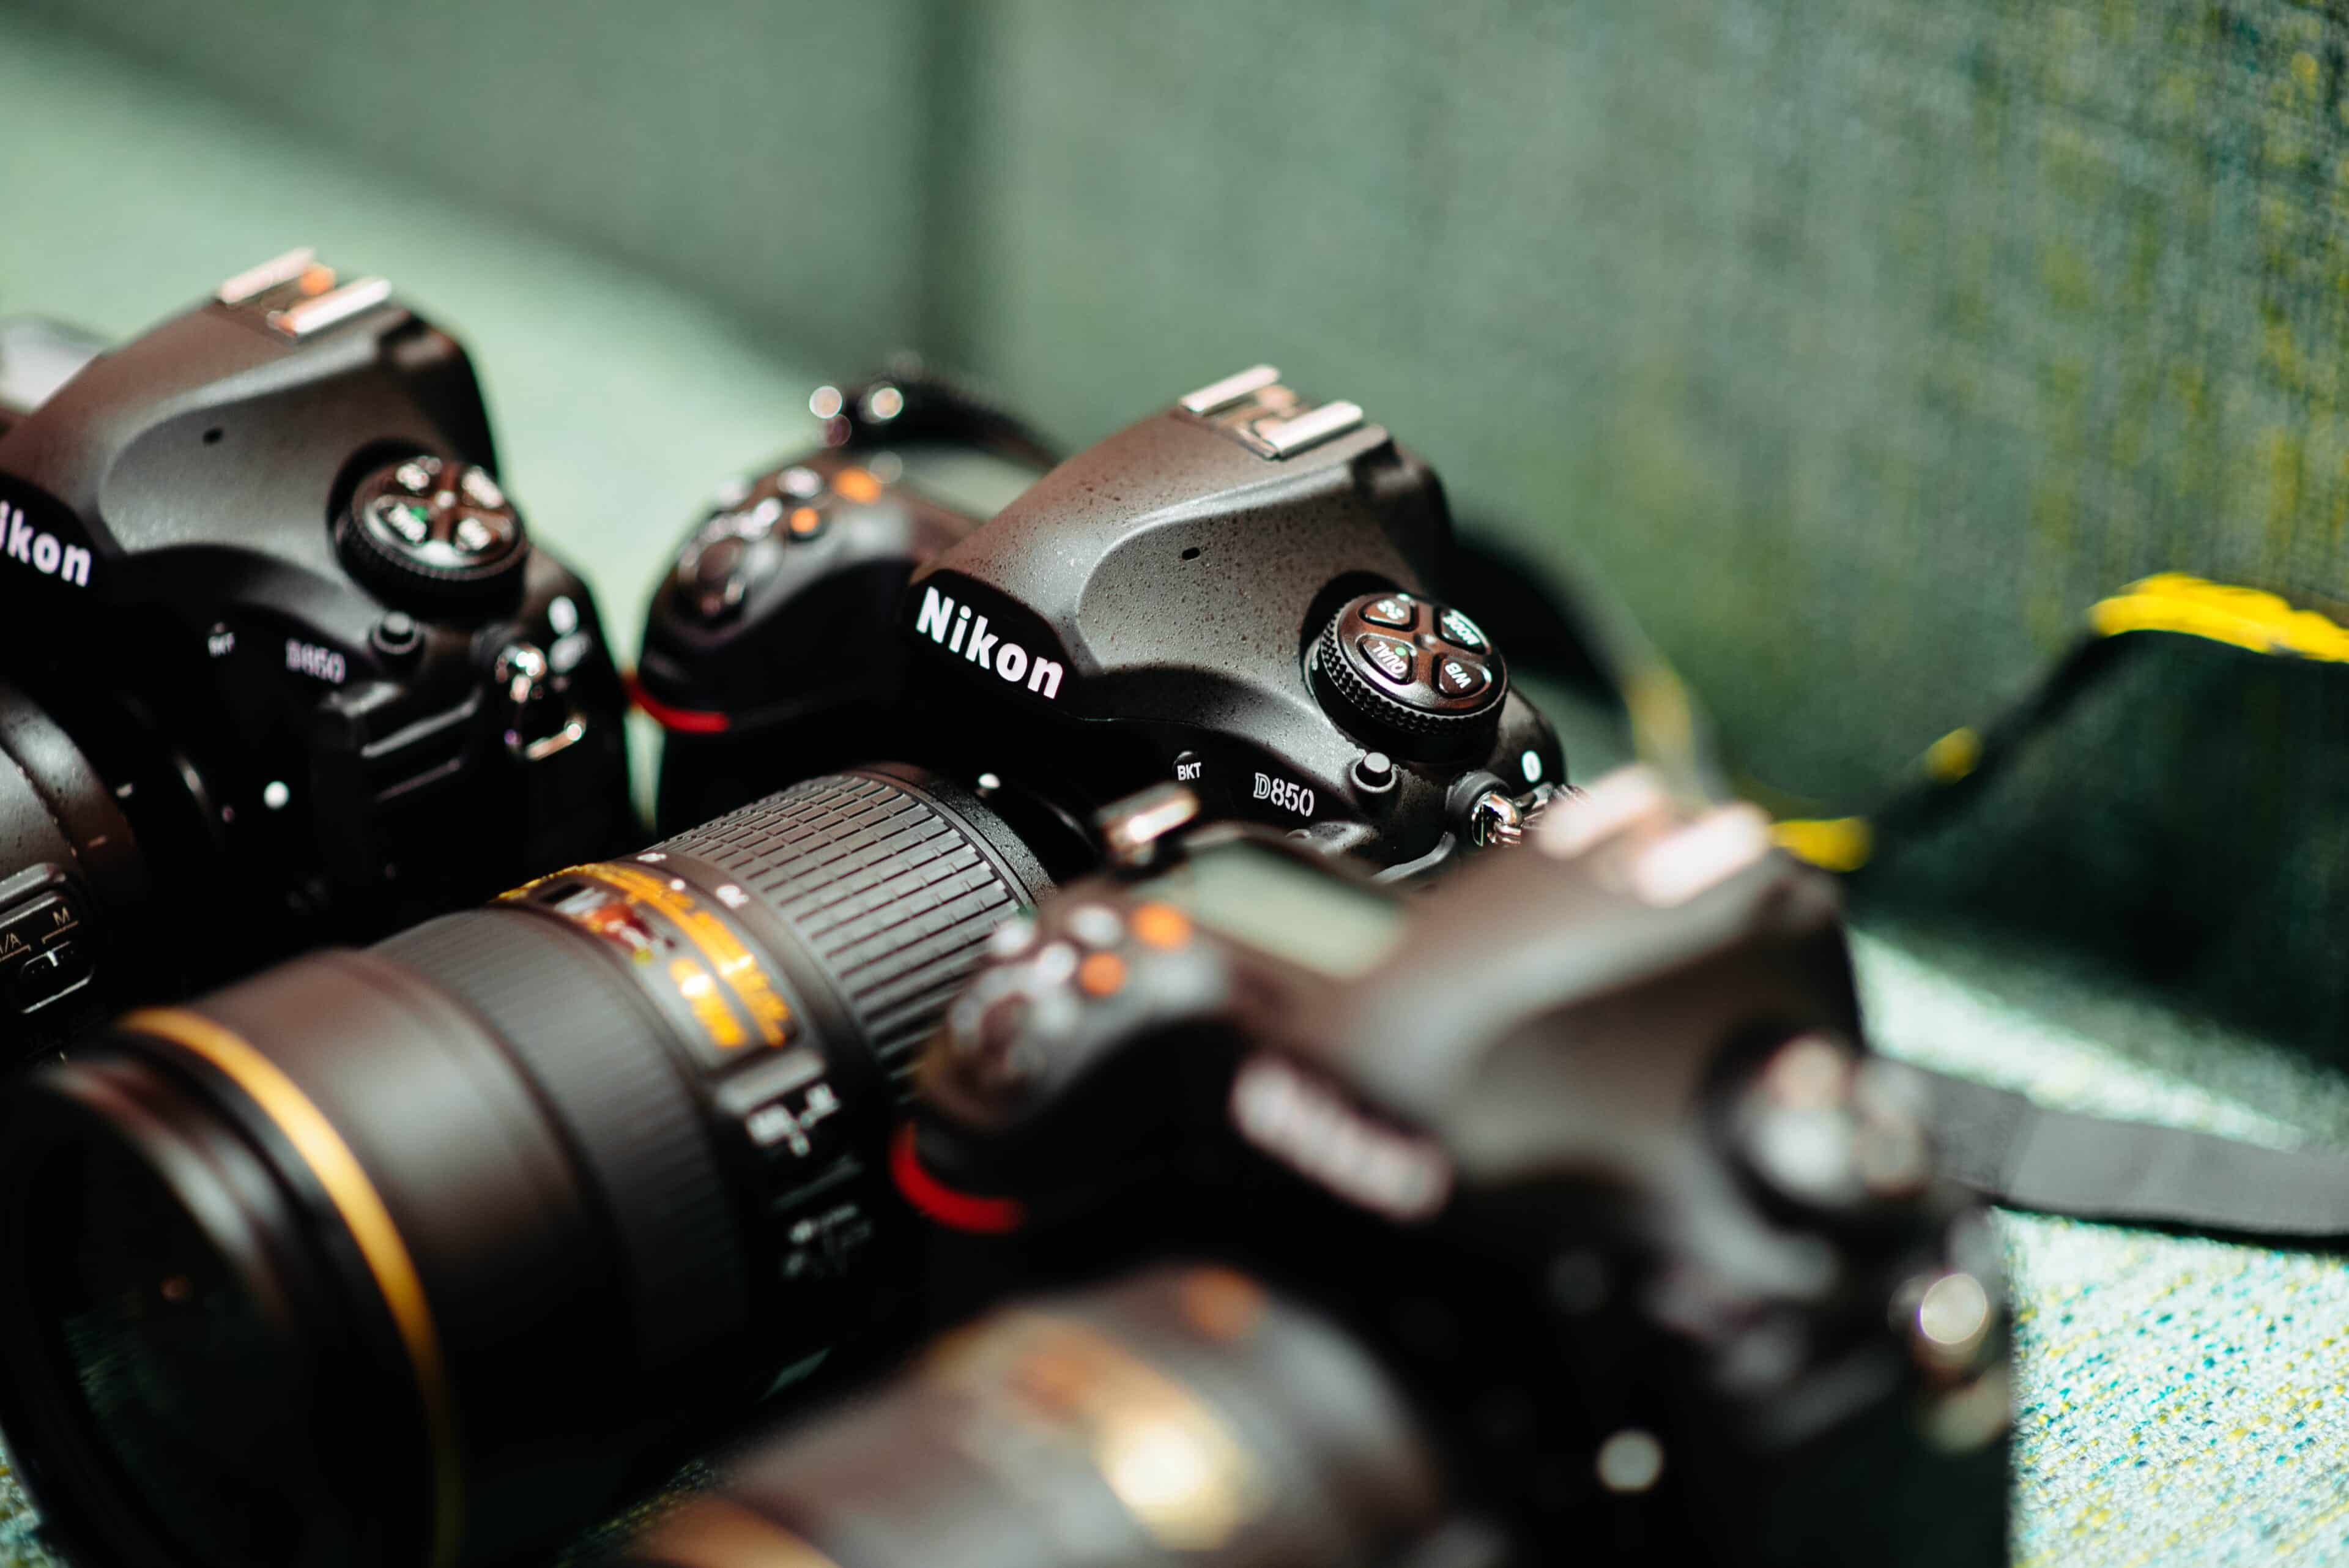 Nikon je po společnosti Canon druhým největším výrobcem zrcadlovek